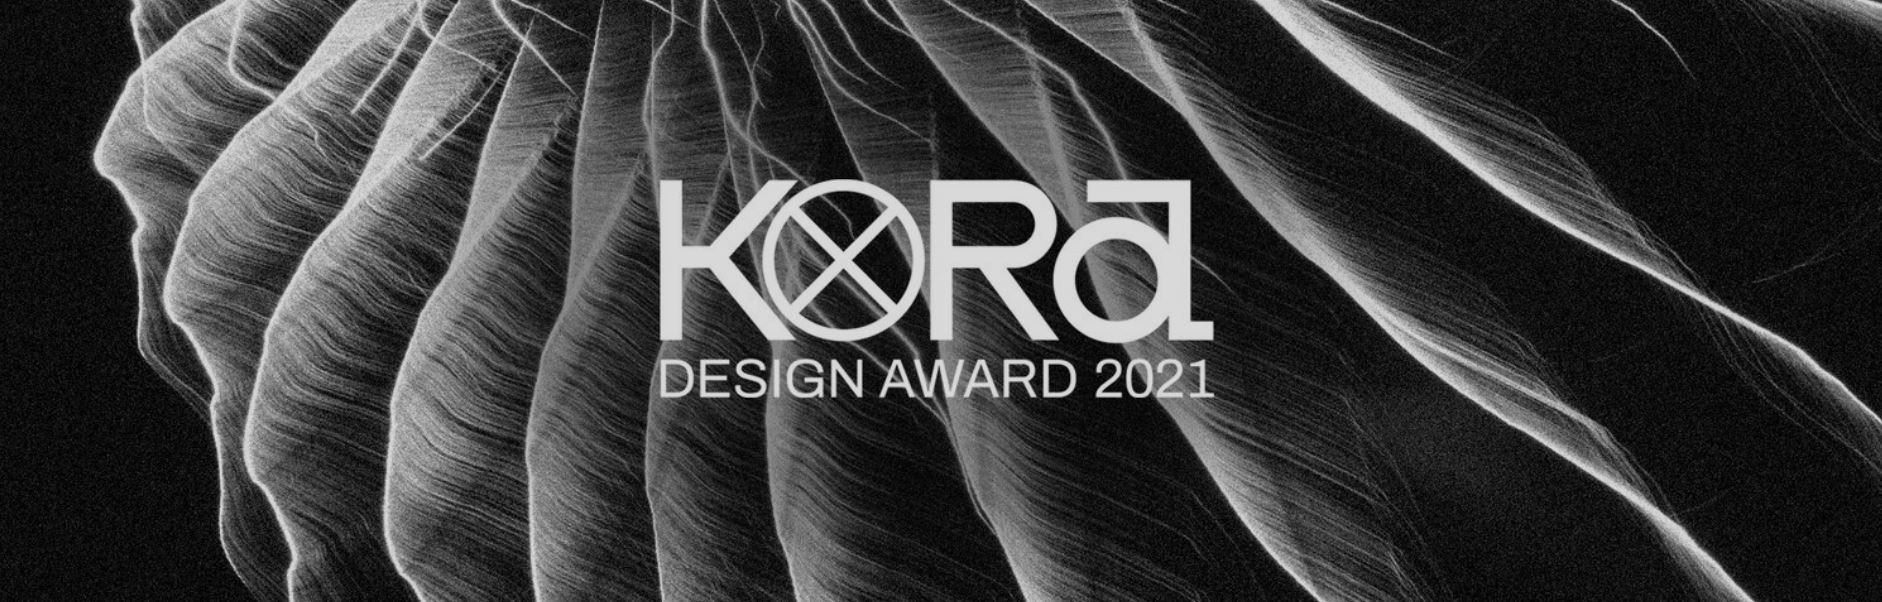 Kora Design Award 2021 – Ampliado el plazo hasta el 25 de octubre